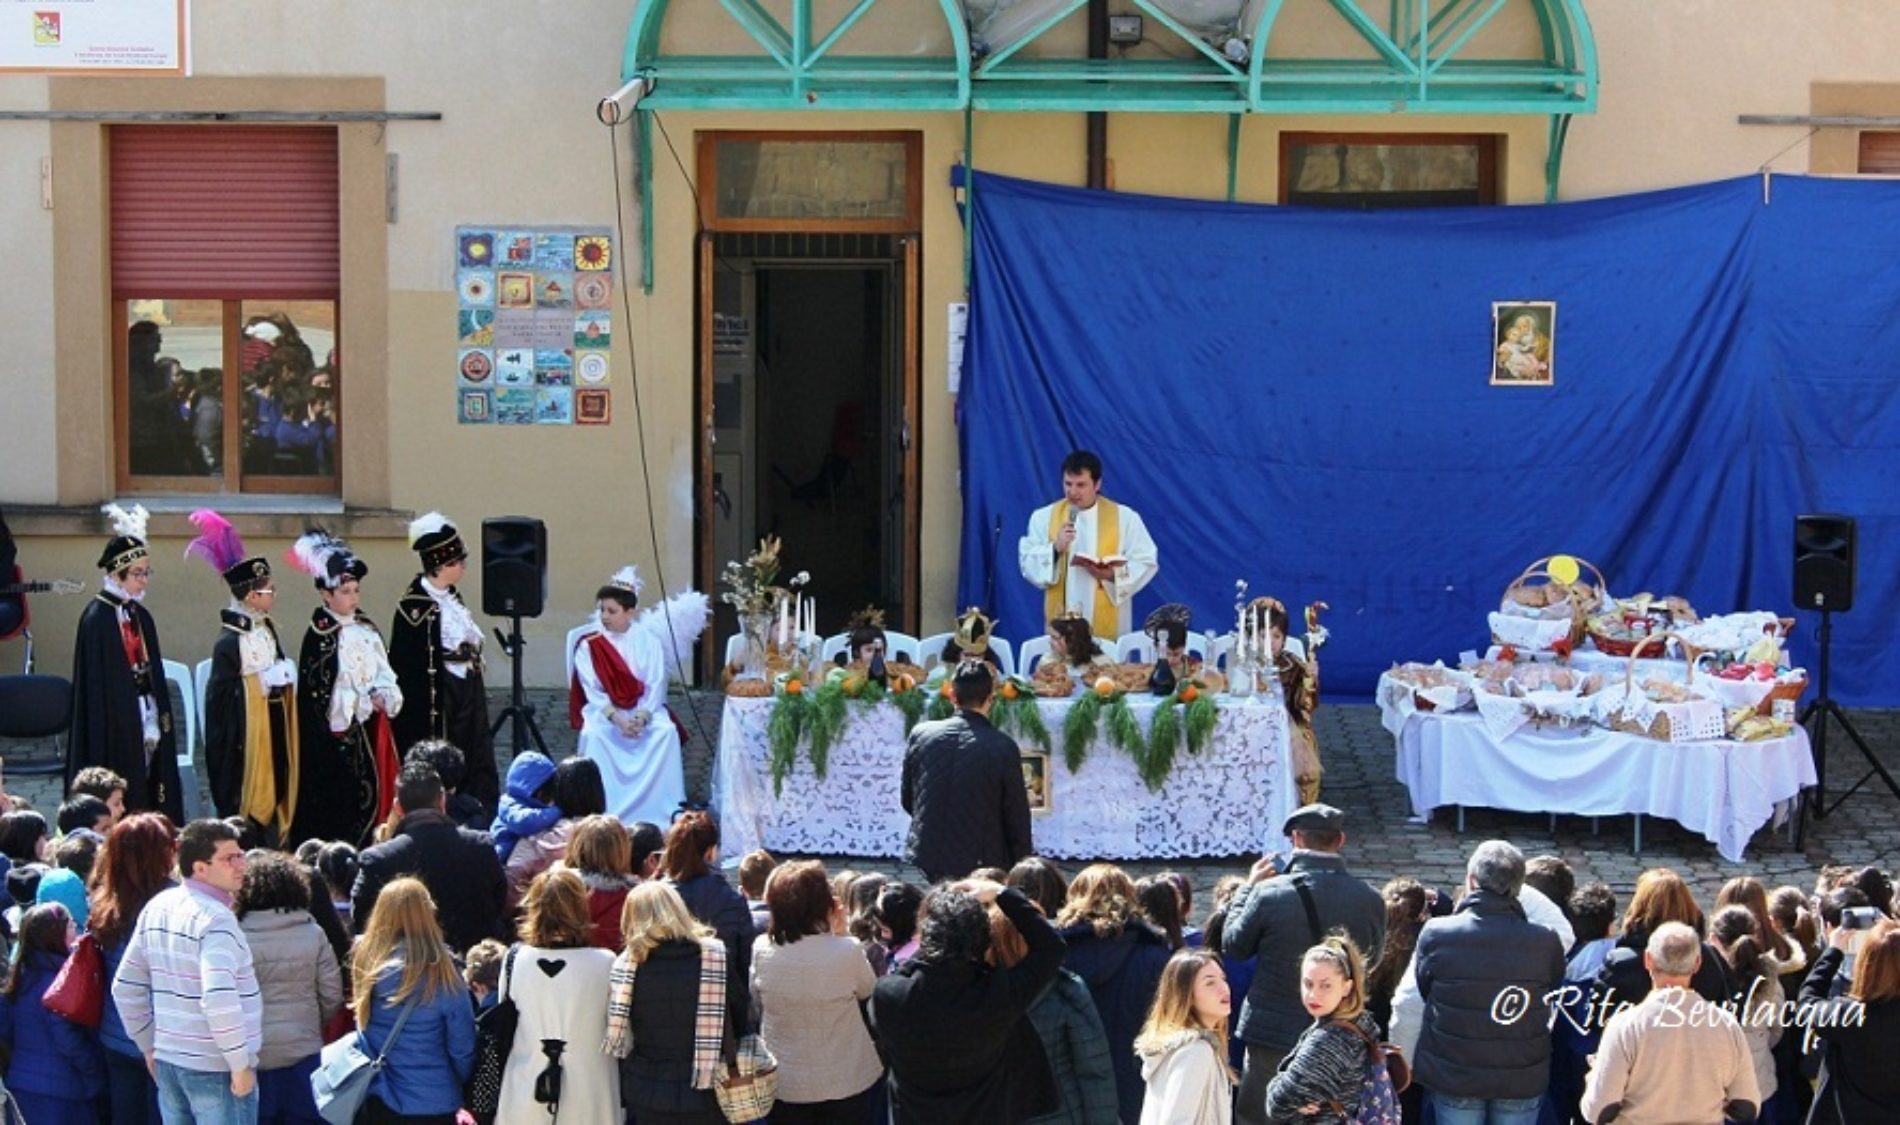 La tradizione della “Tavolata di san Giuseppe” realizzata dall’Istituto Comprensivo “S. G. Bosco” Barrafranca